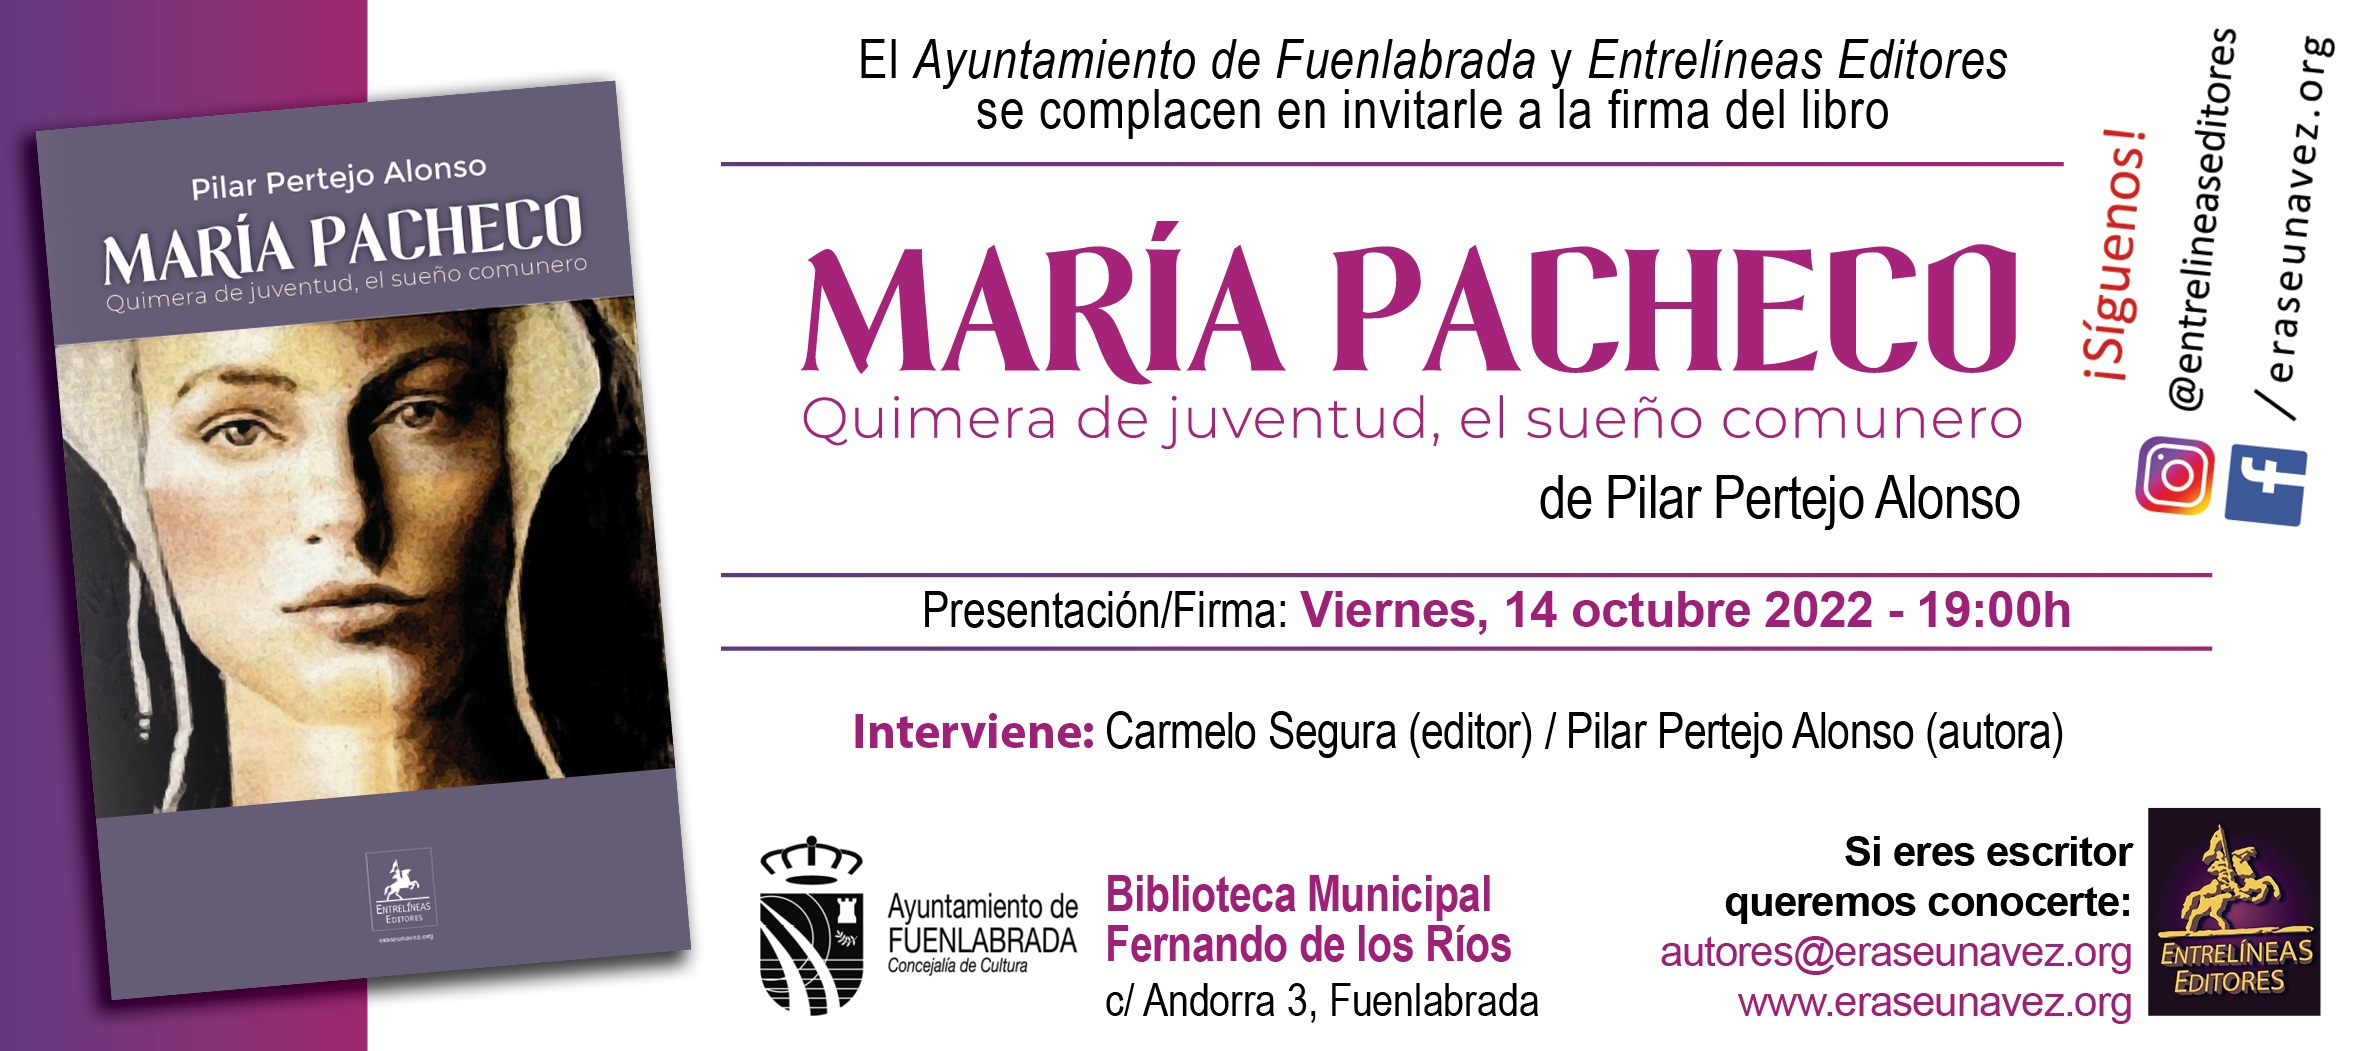 2022-10-14_-_Maria_Pacheco_-_invitacion